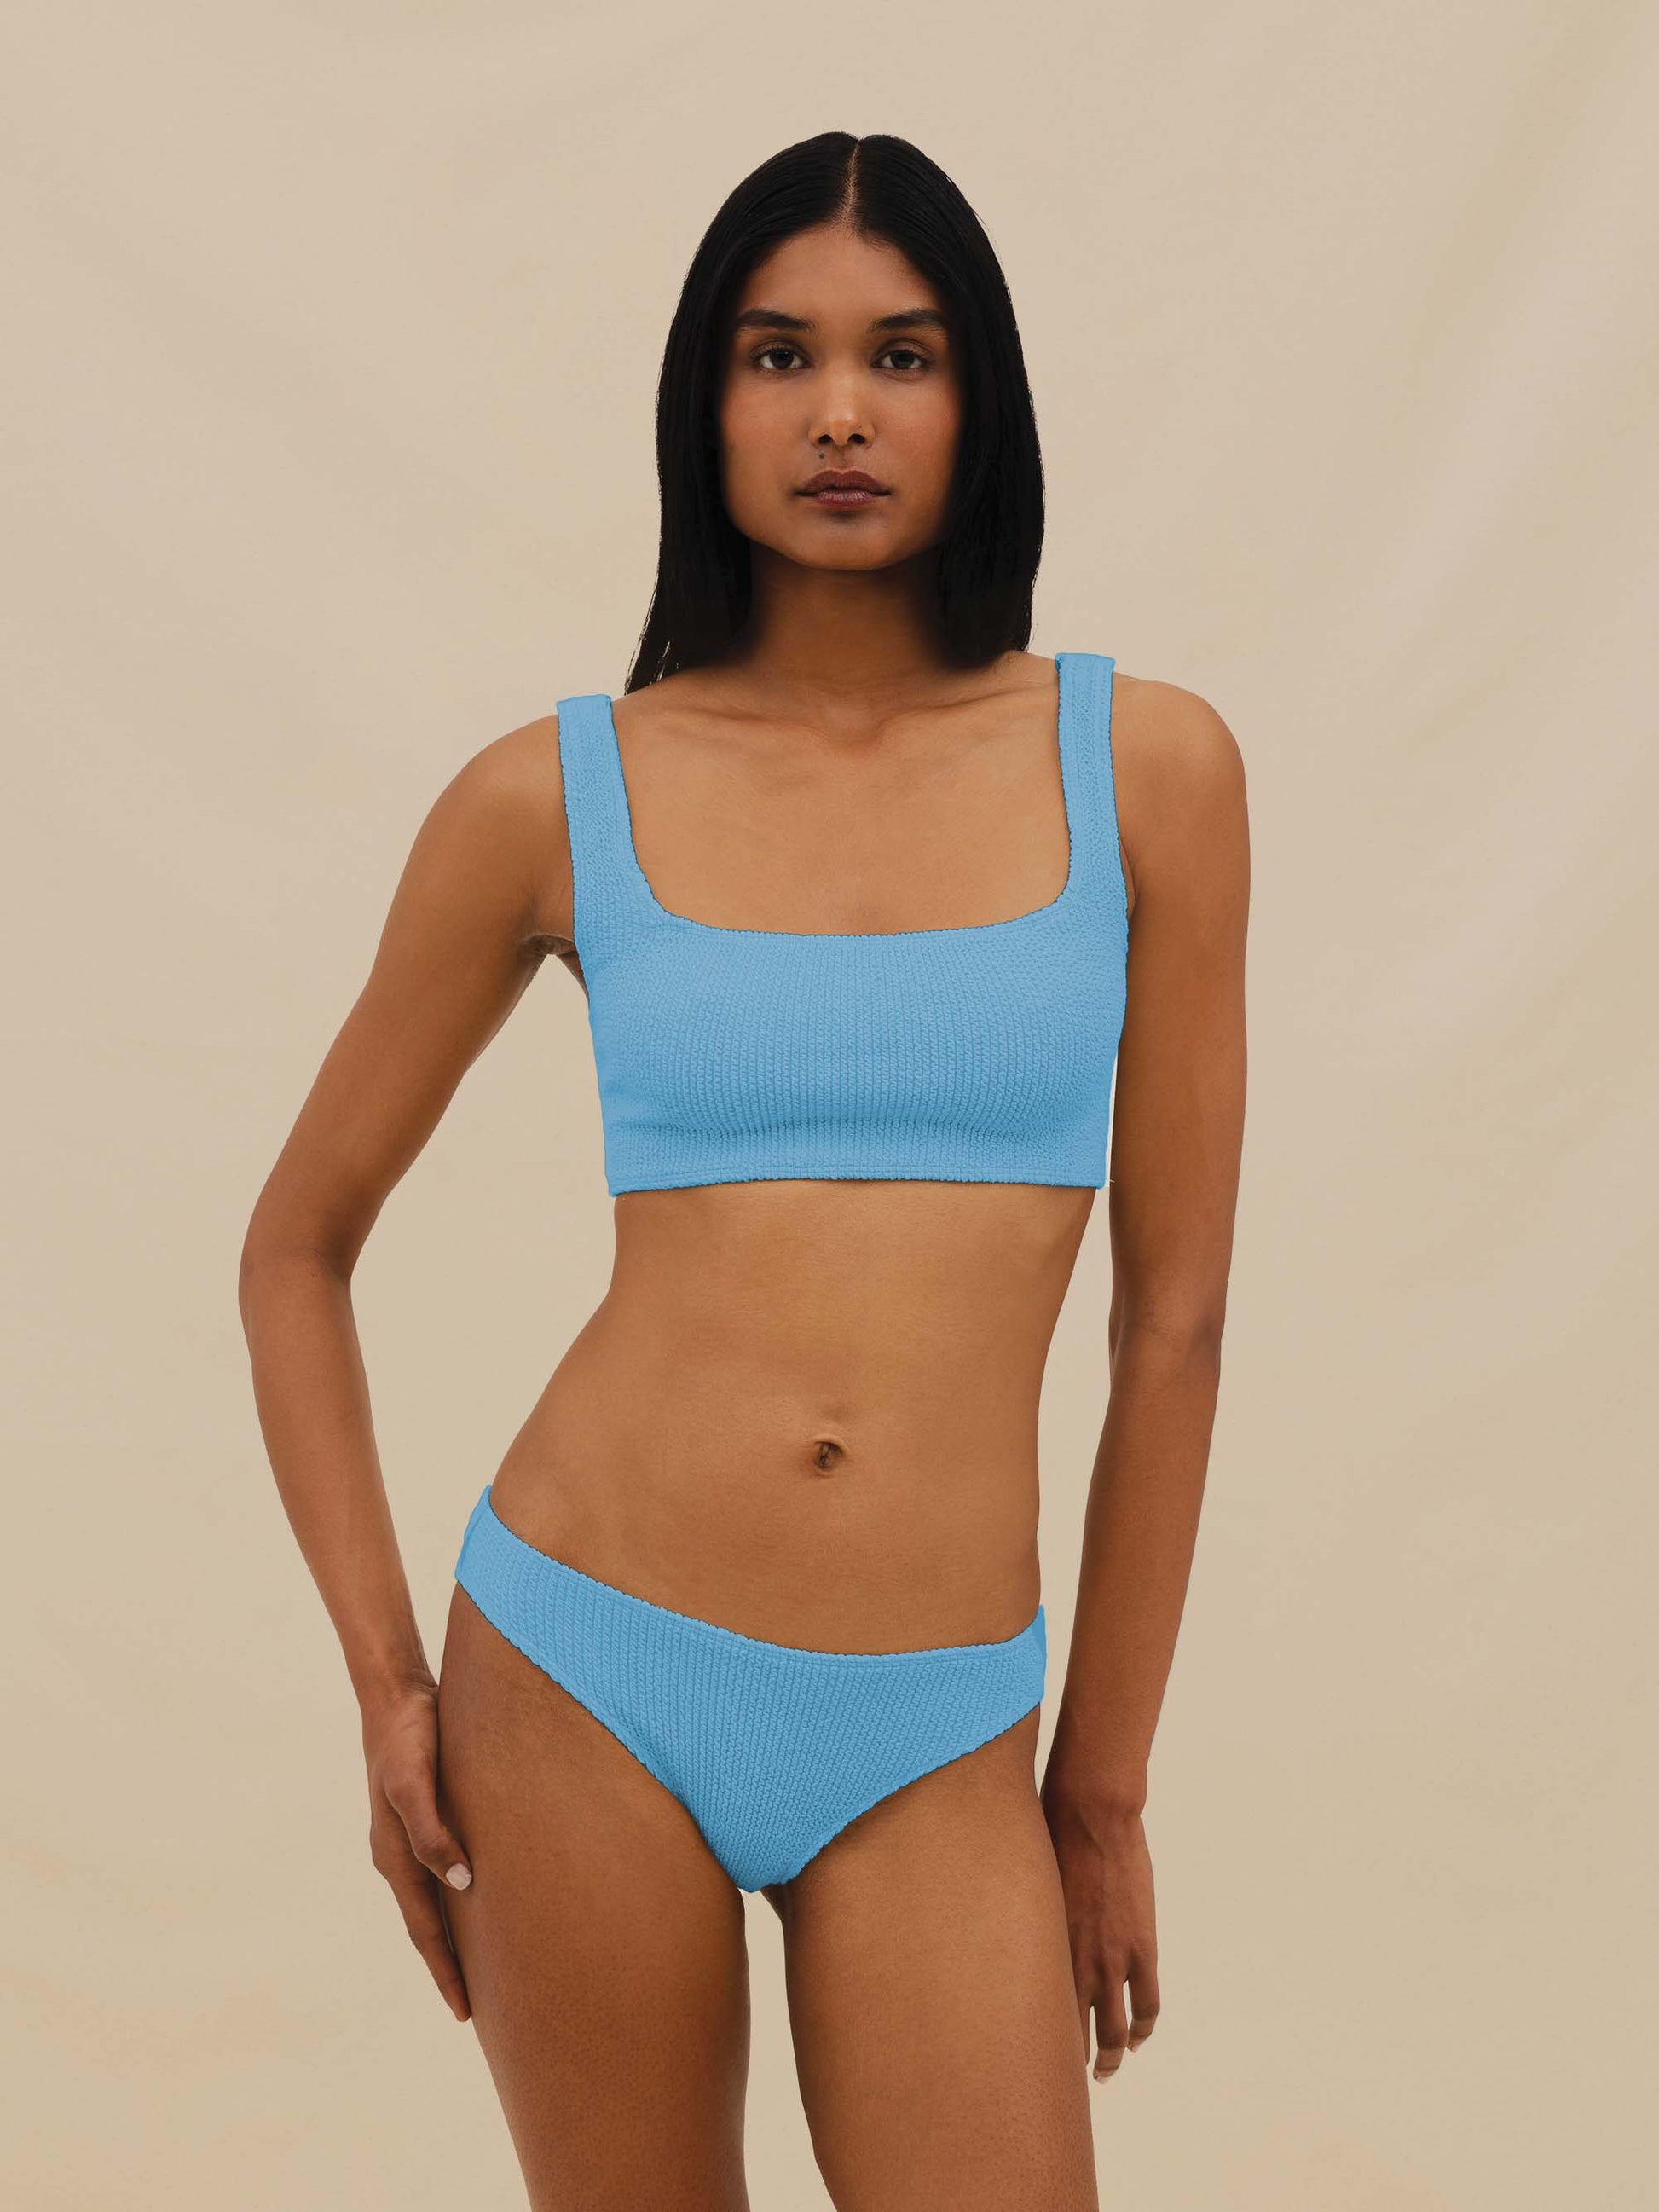 Produktbild: Sorbet Island - Celine Bikini von sorbet island im Onlineshop von dasMikruli - Dein Shop für Baby Erstausstattung